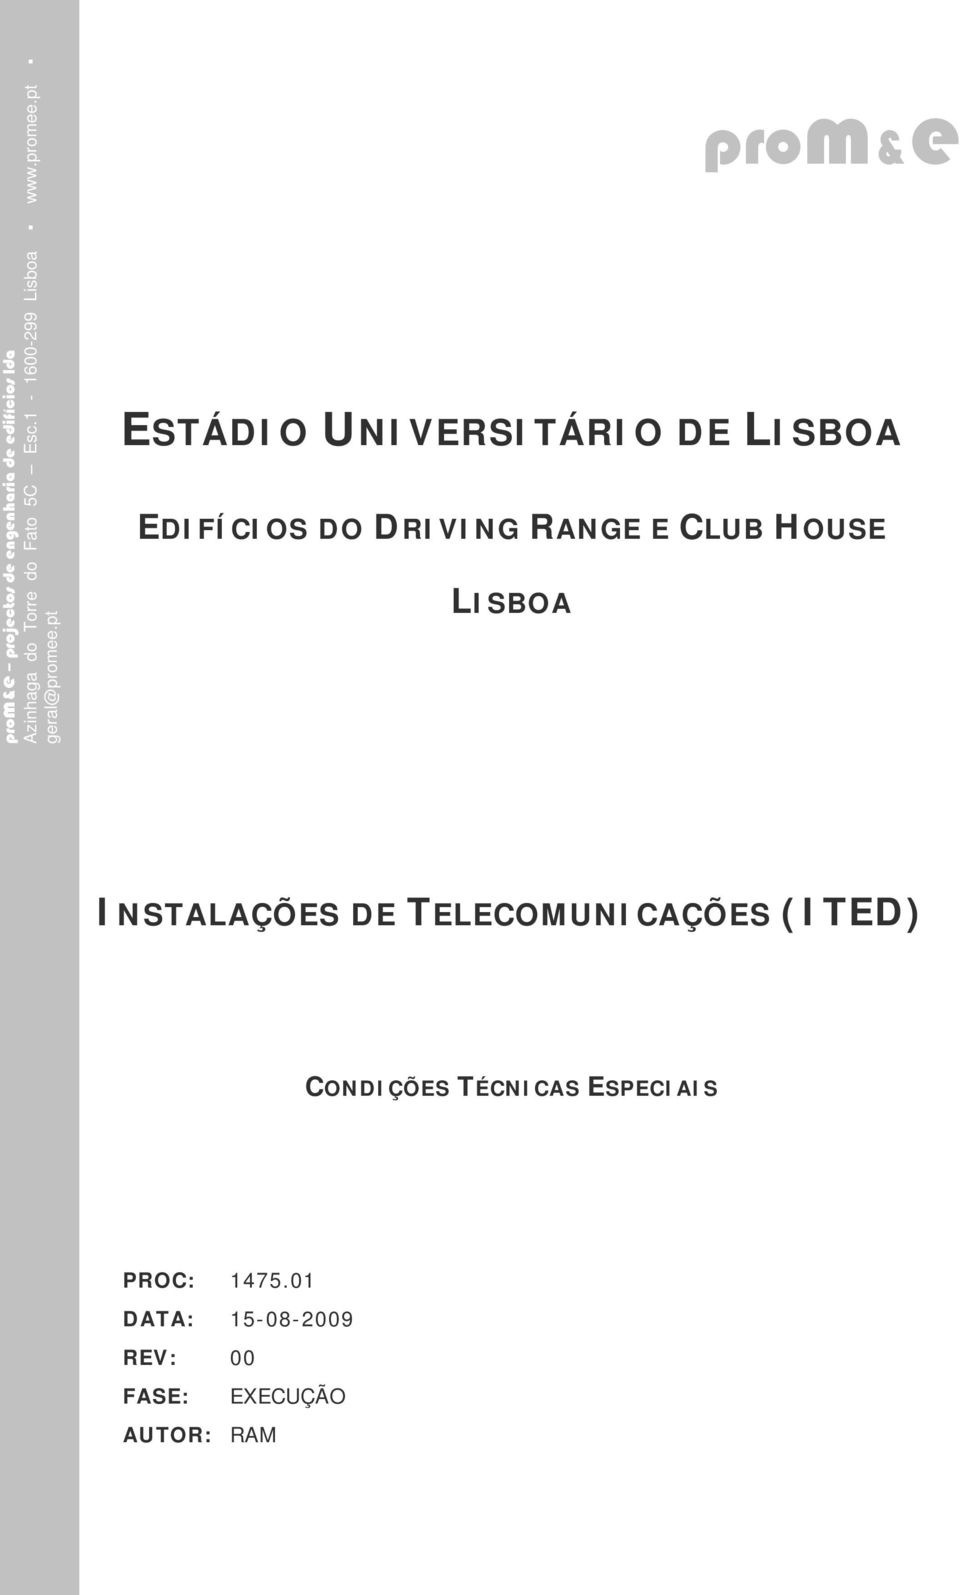 pt ESTÁDIO UNIVERSITÁRIO DE LISBOA EDIFÍCIOS DO DRIVING RANGE E CLUB